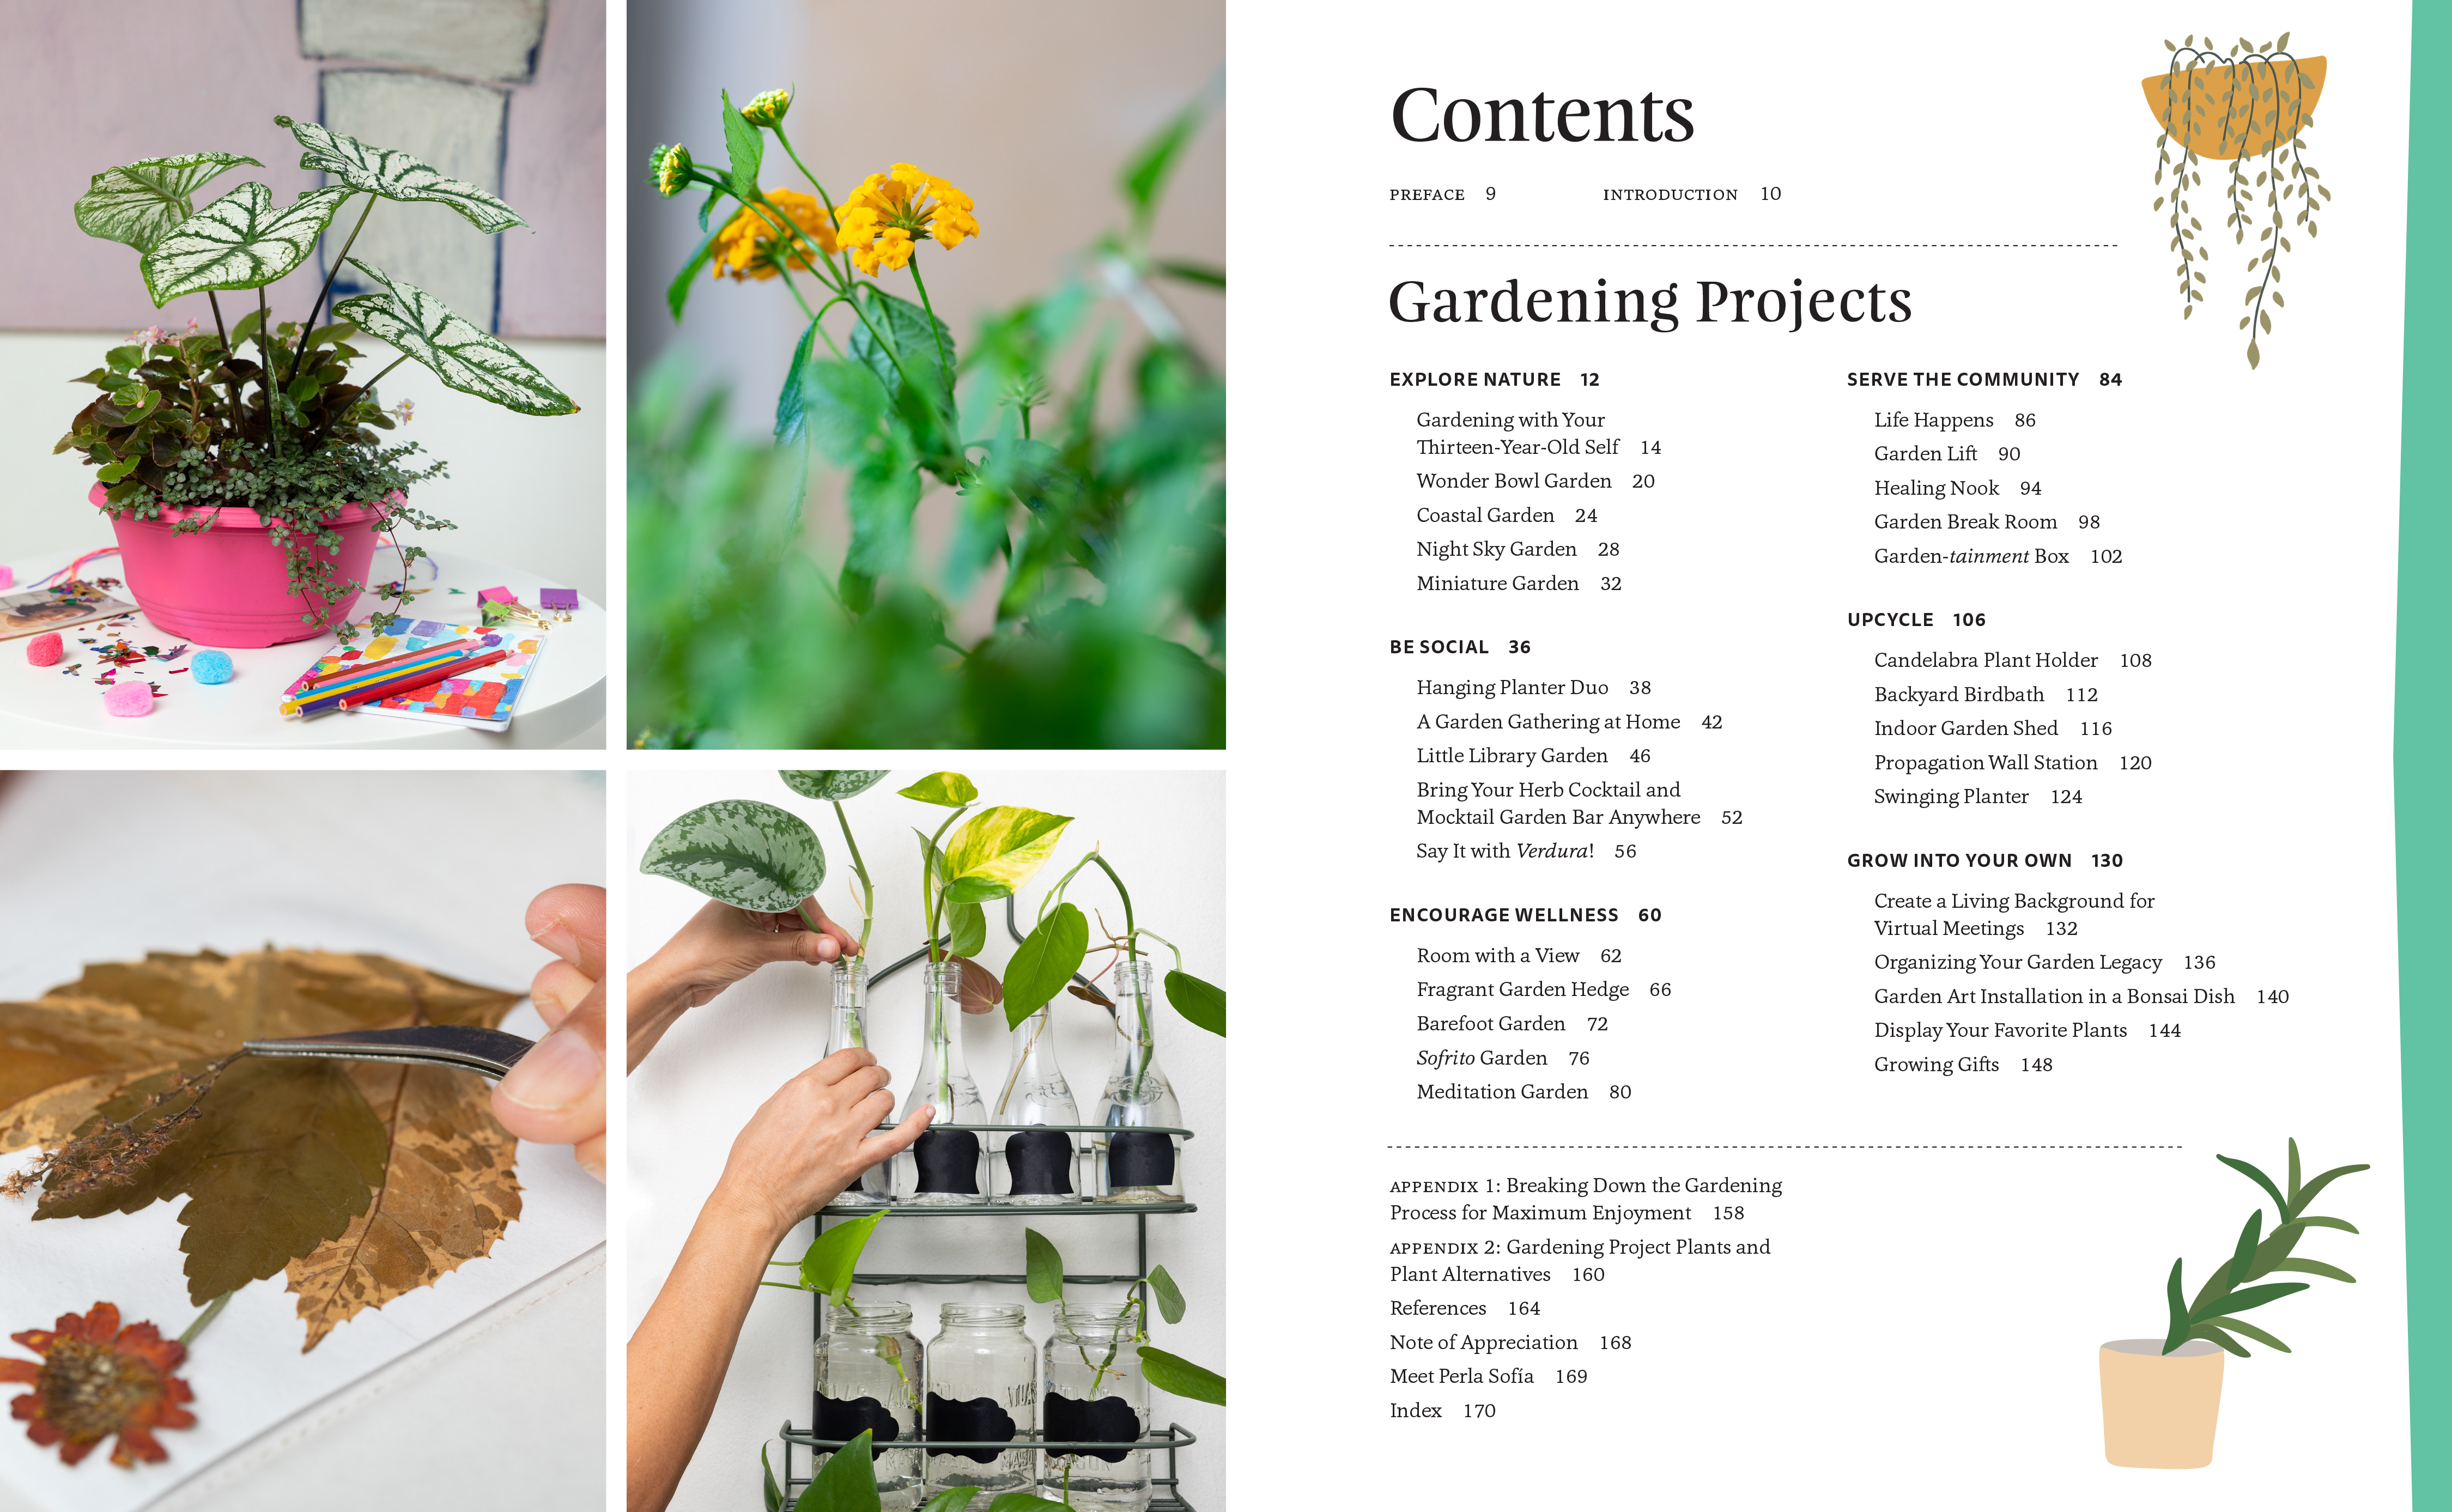 ¡Verdura! – Living a Garden Life